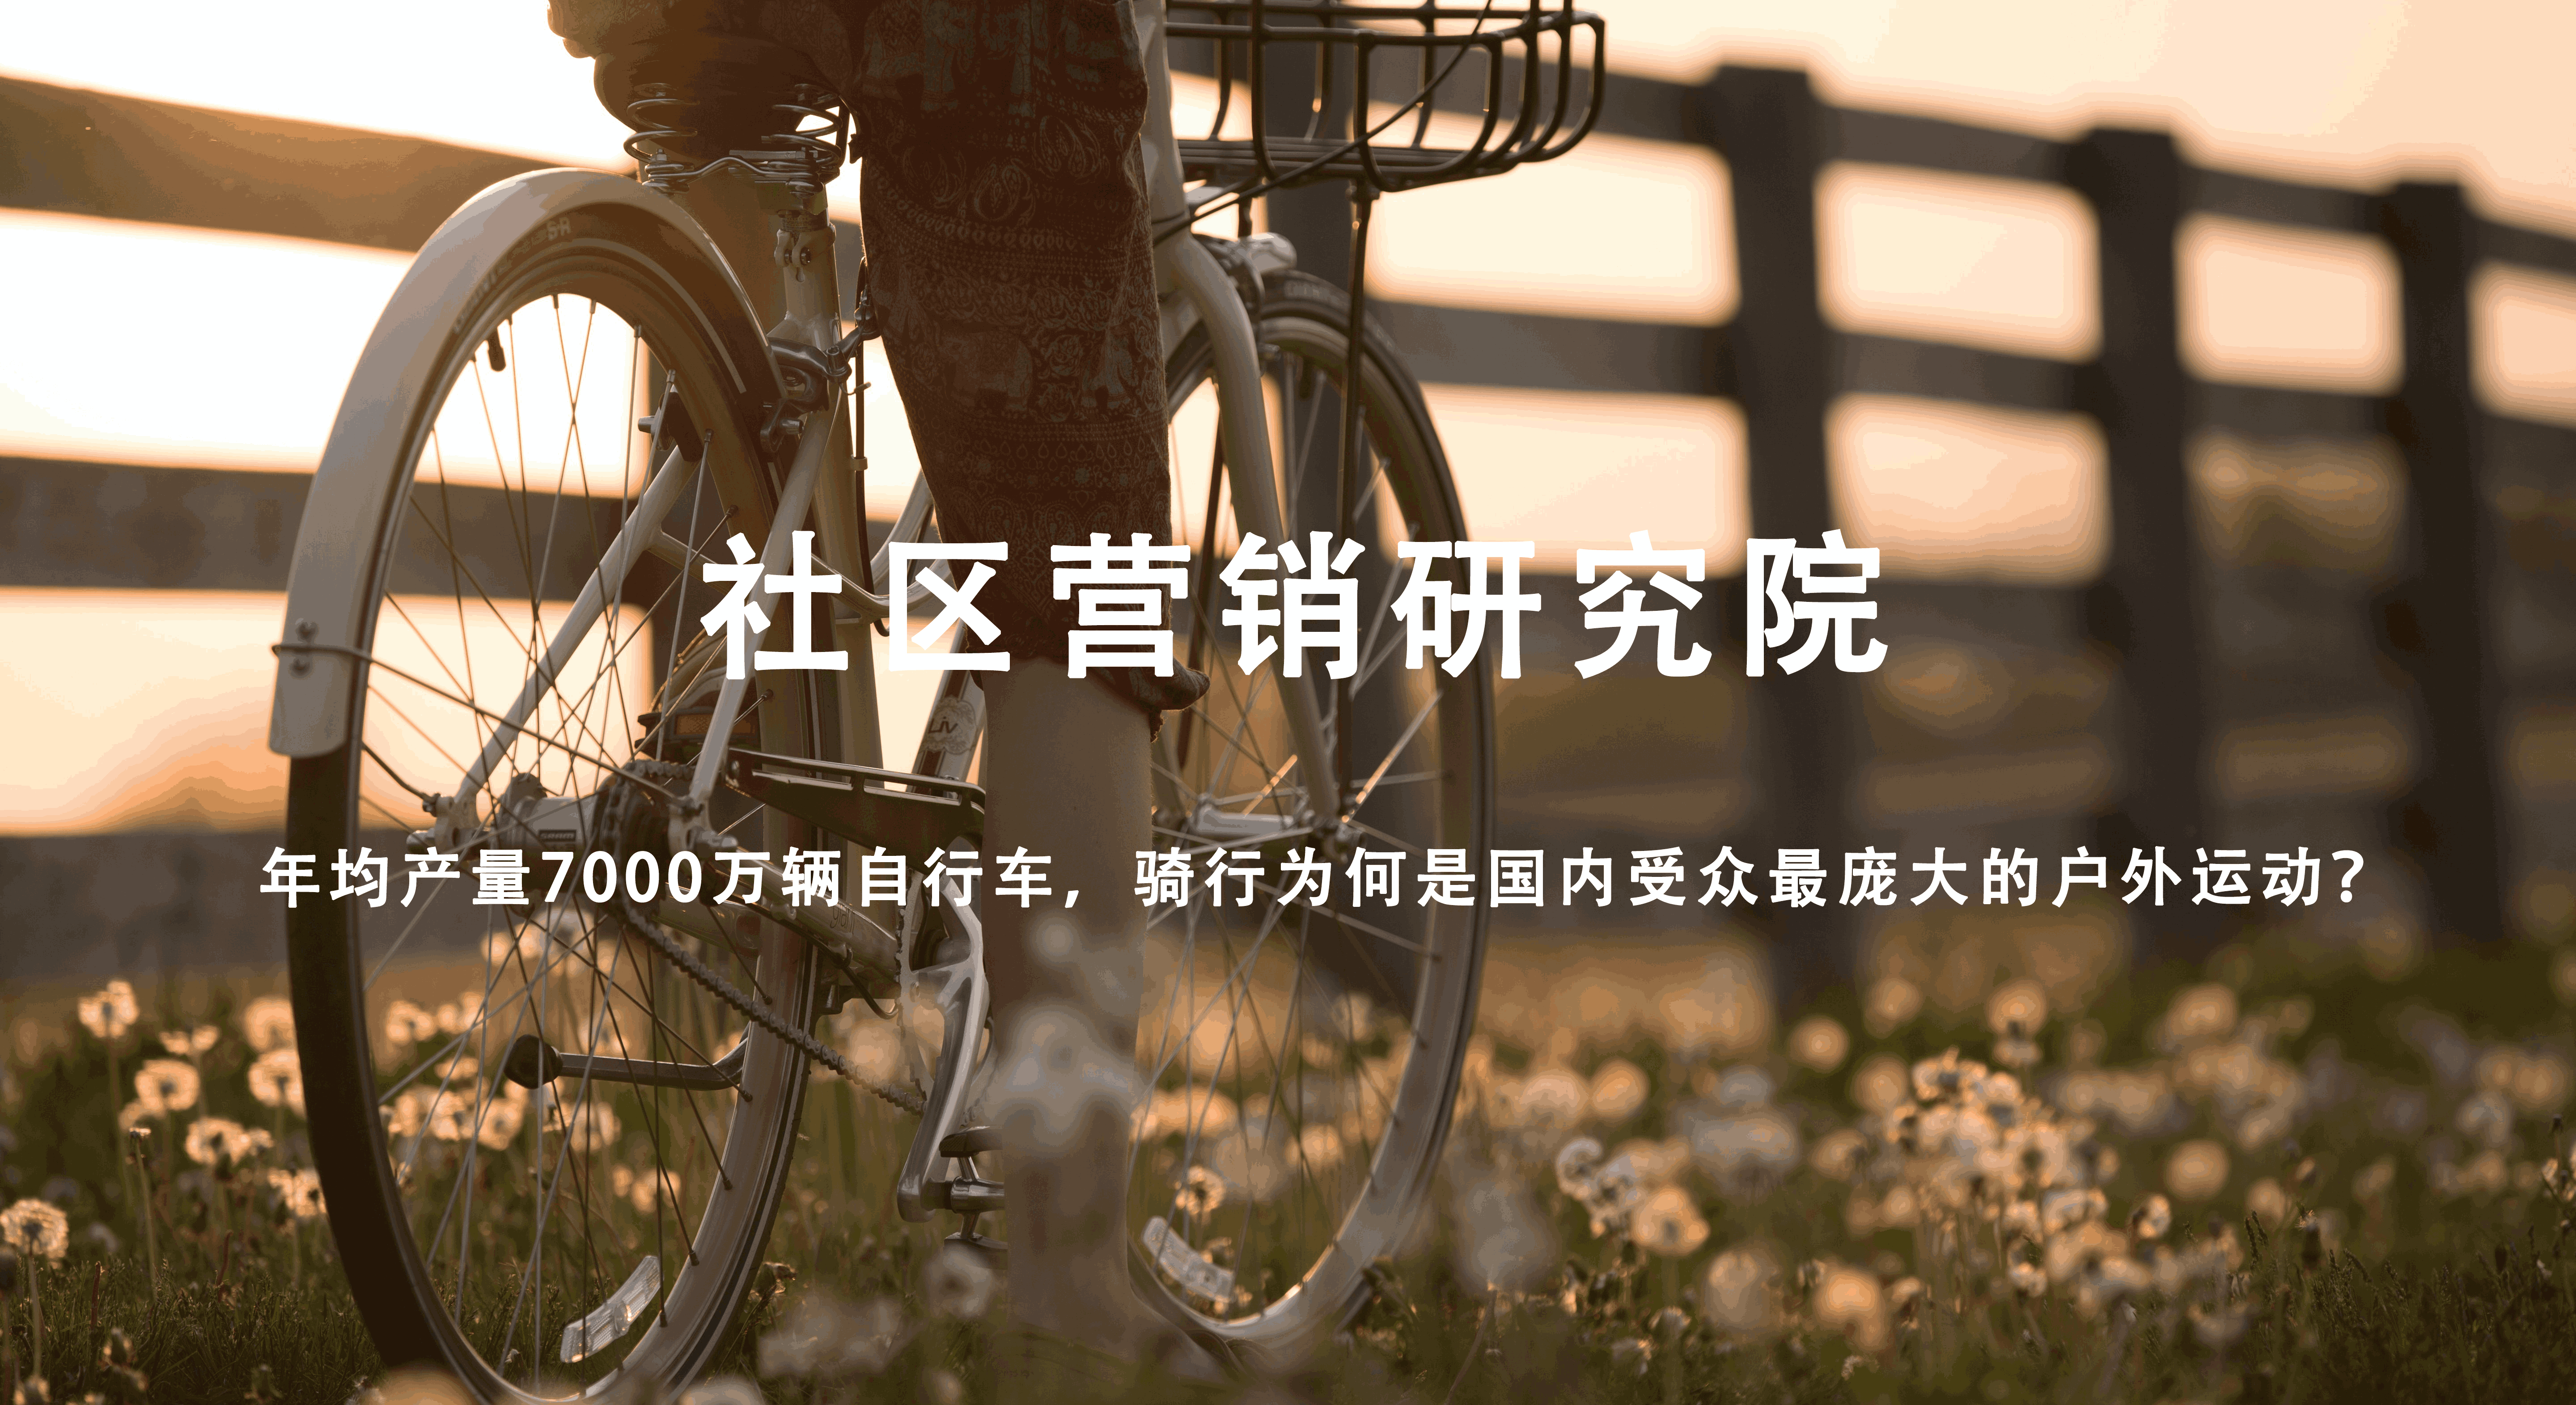 年均产量7000万辆自行车，骑行为何是国内受众最庞大的户外运动？